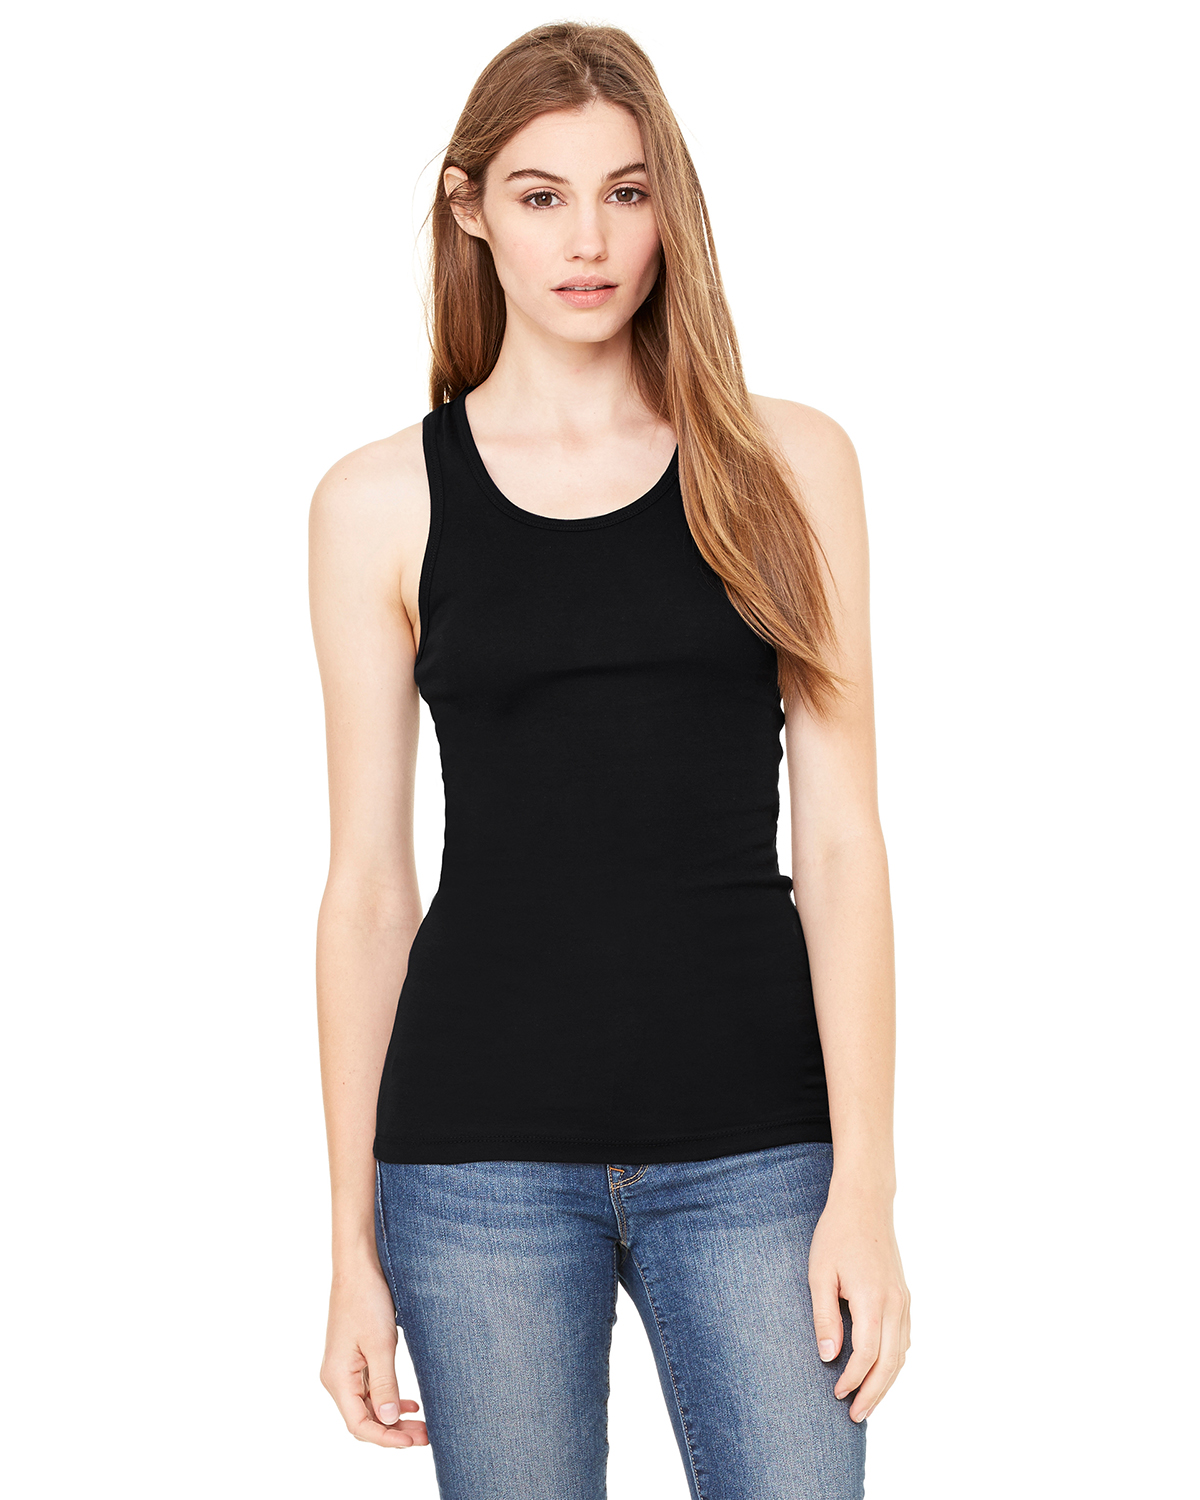 Bella 8701 Women's Sheer Rib Longer Length T-Shirt $6.85 - Women's T-Shirts